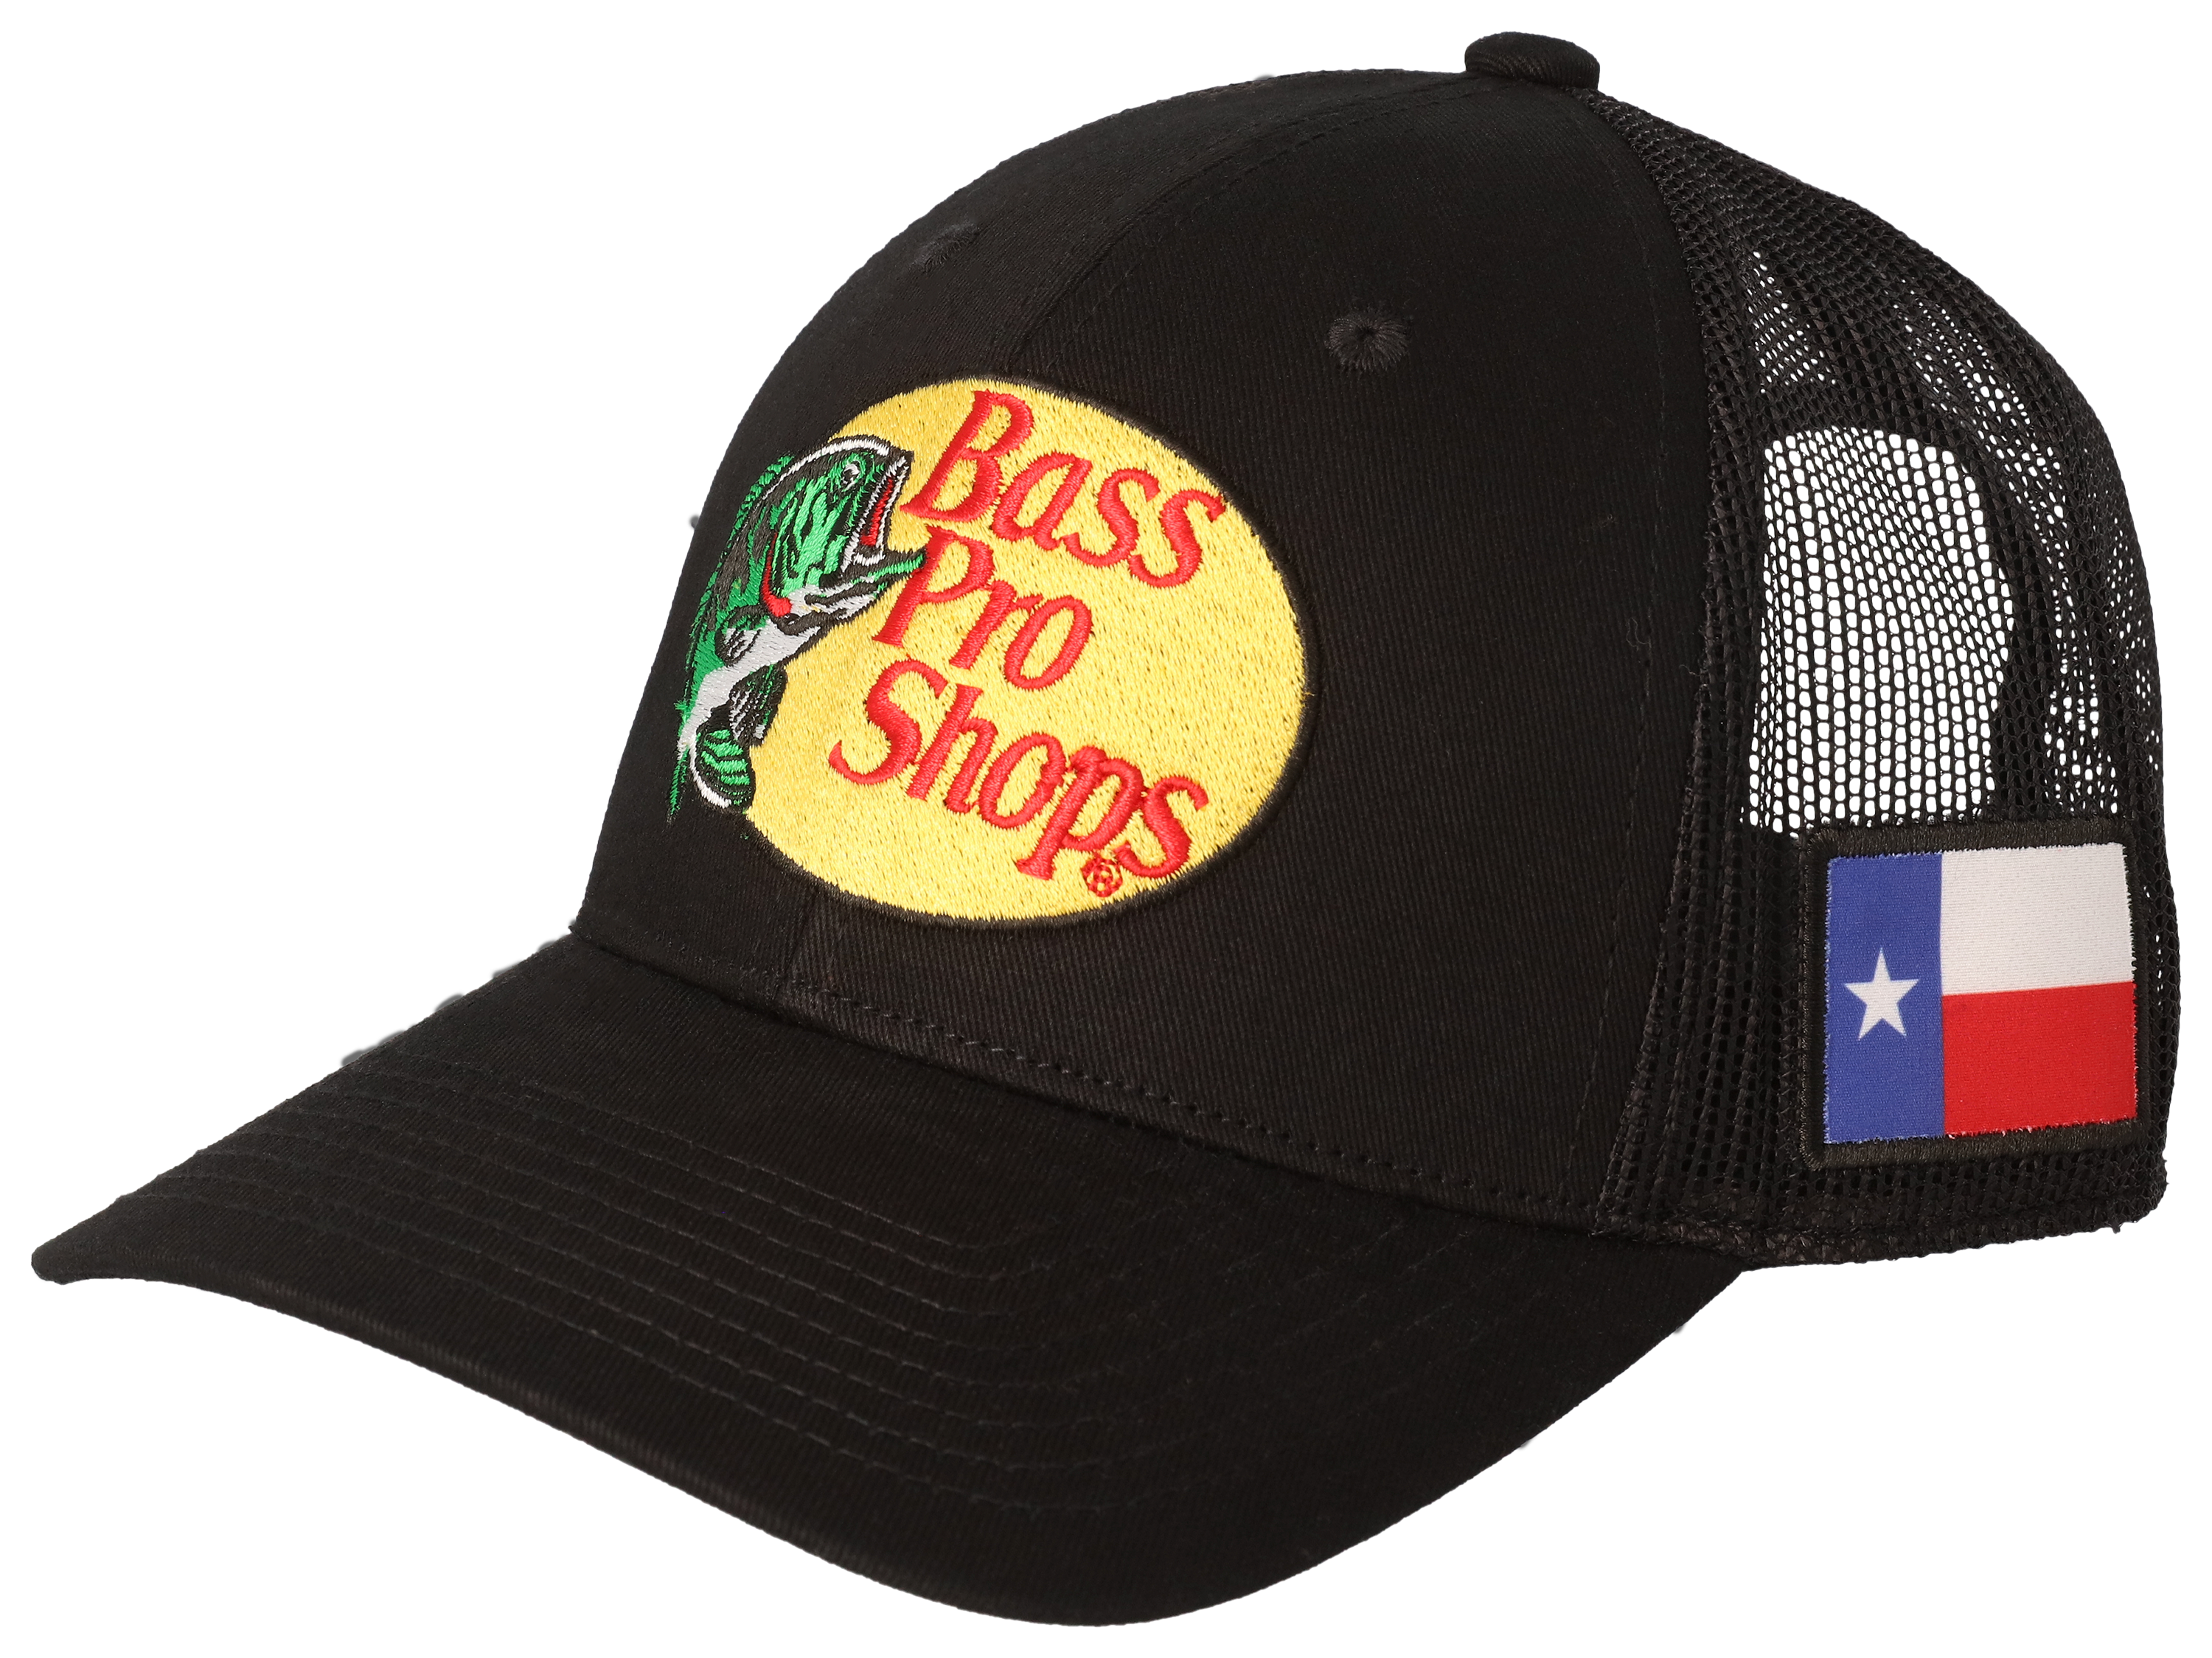 Bass Pro Shops Chris Janson Conservation Cap